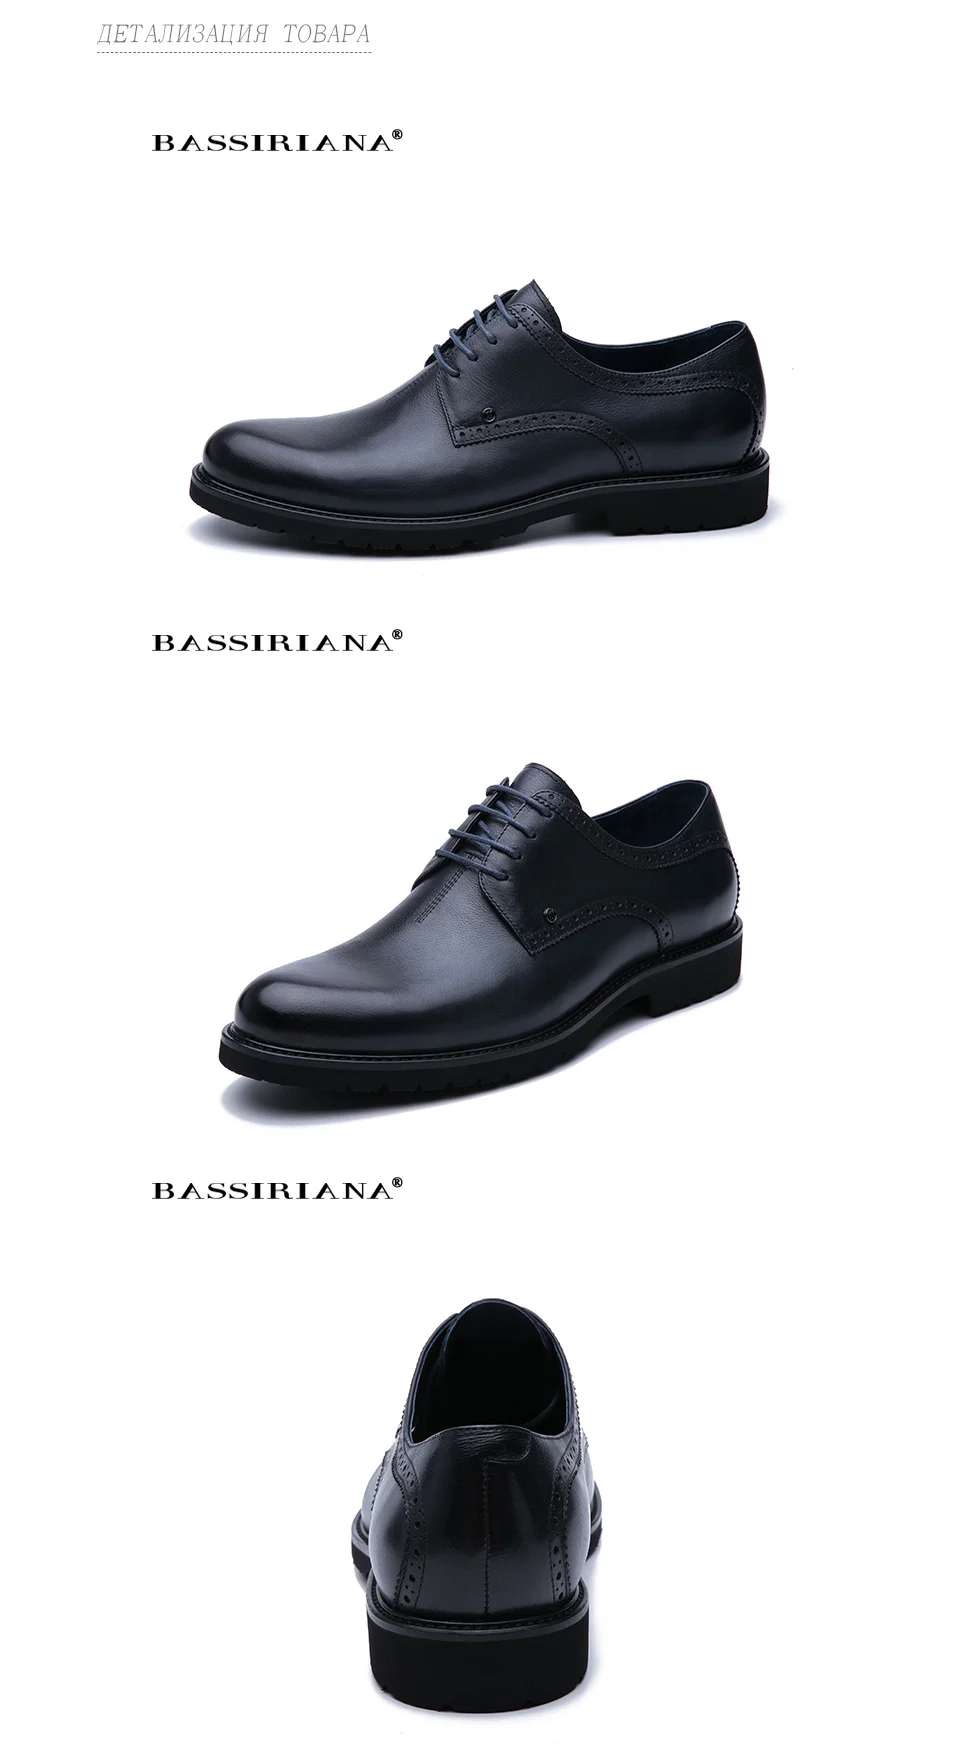 BASSIRIANA / мужской бизнес классическая мода высокого качества удобный размер 39-45